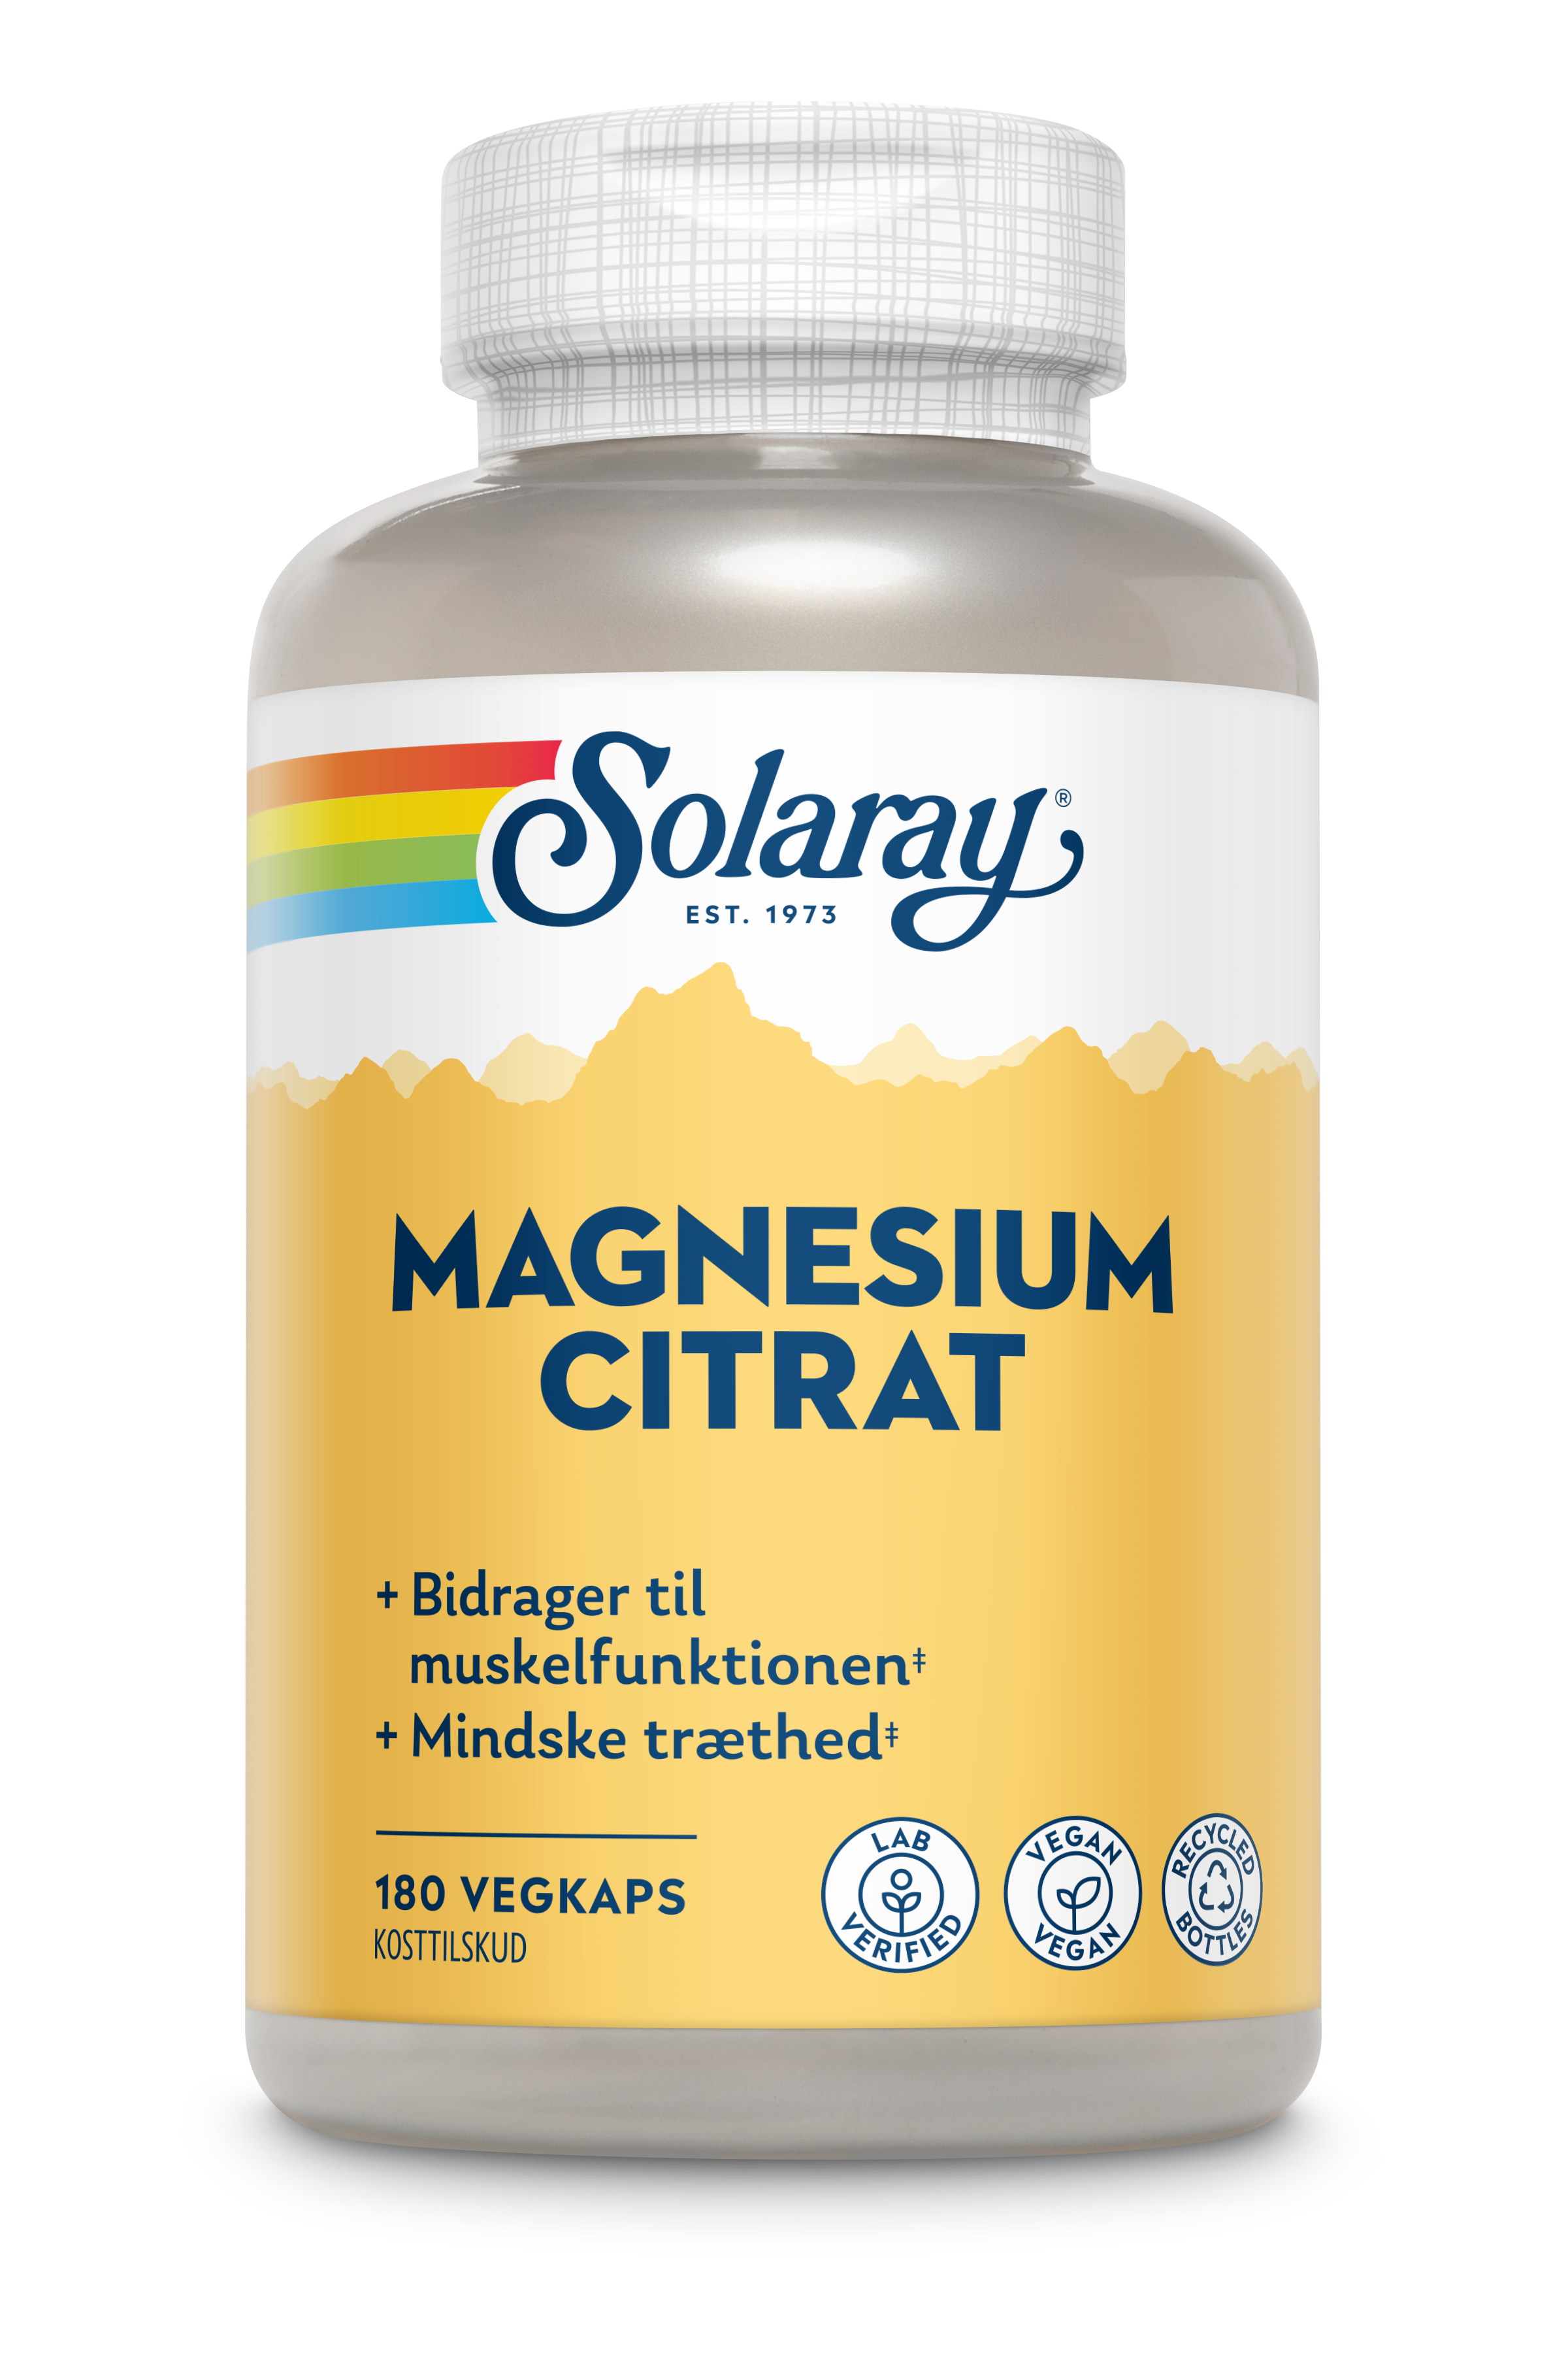 Magnesium Citrat produktfoto